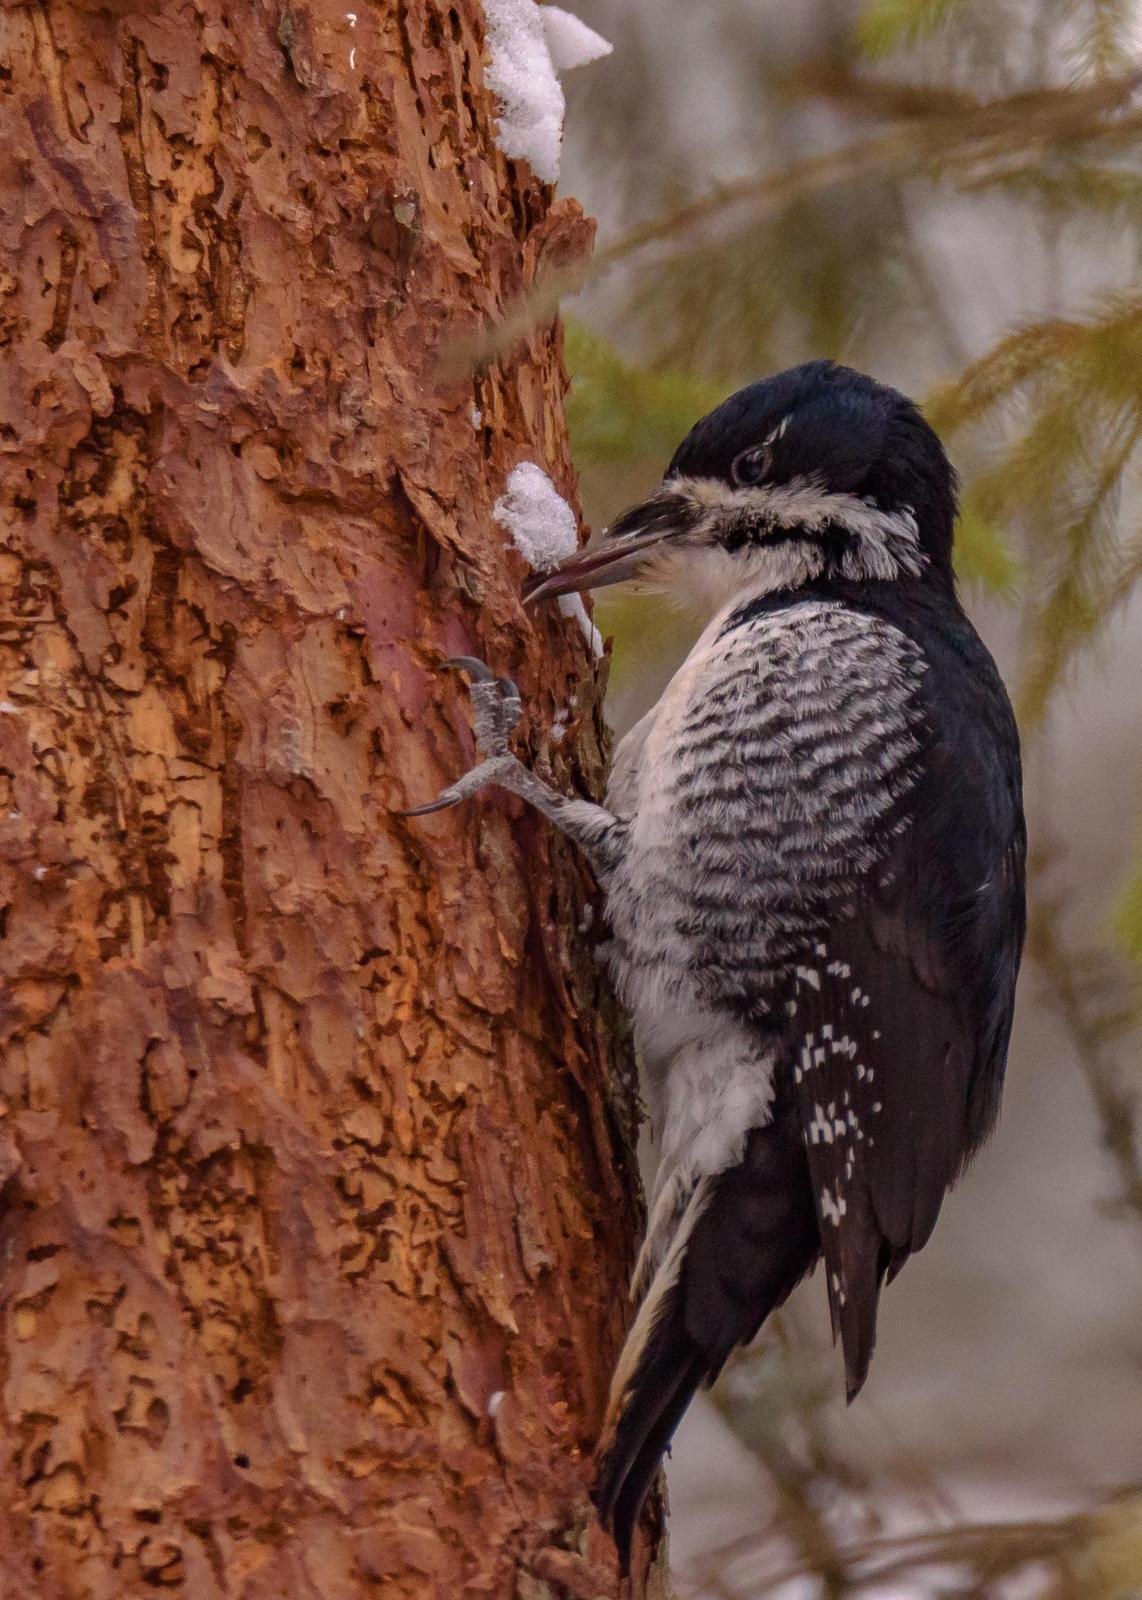 Black-backed Woodpecker Photo by Keshava Mysore